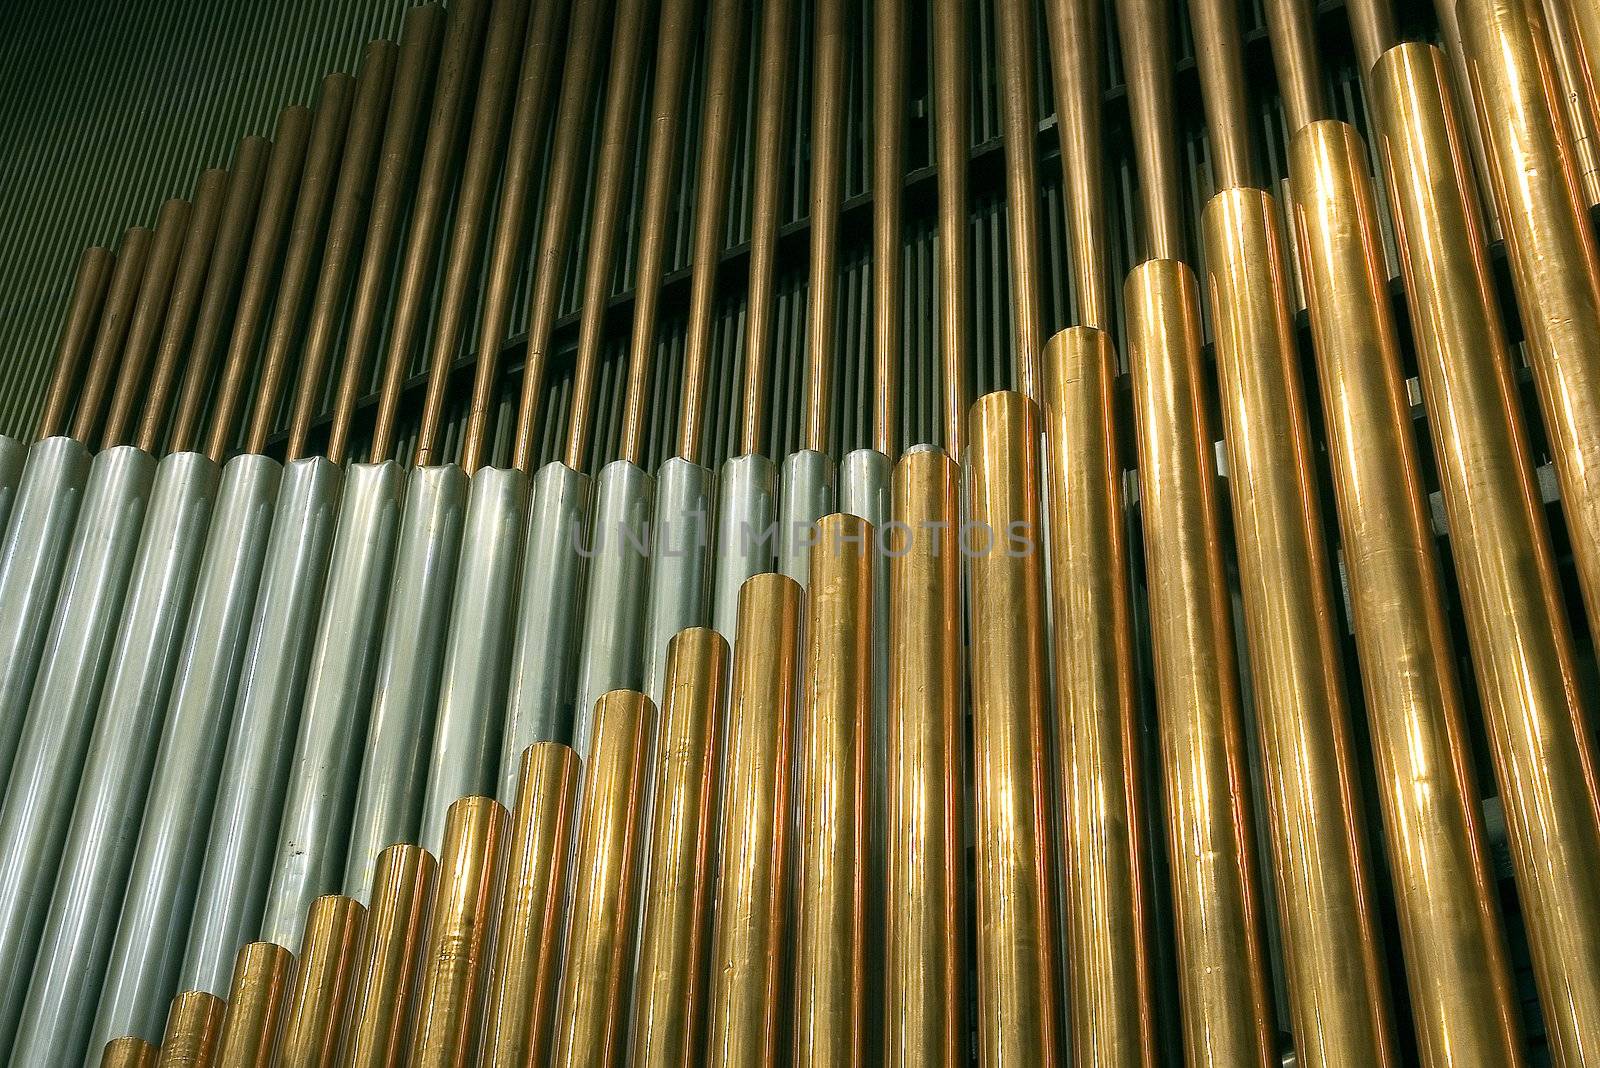 Traditional organ pipes by sibrikov